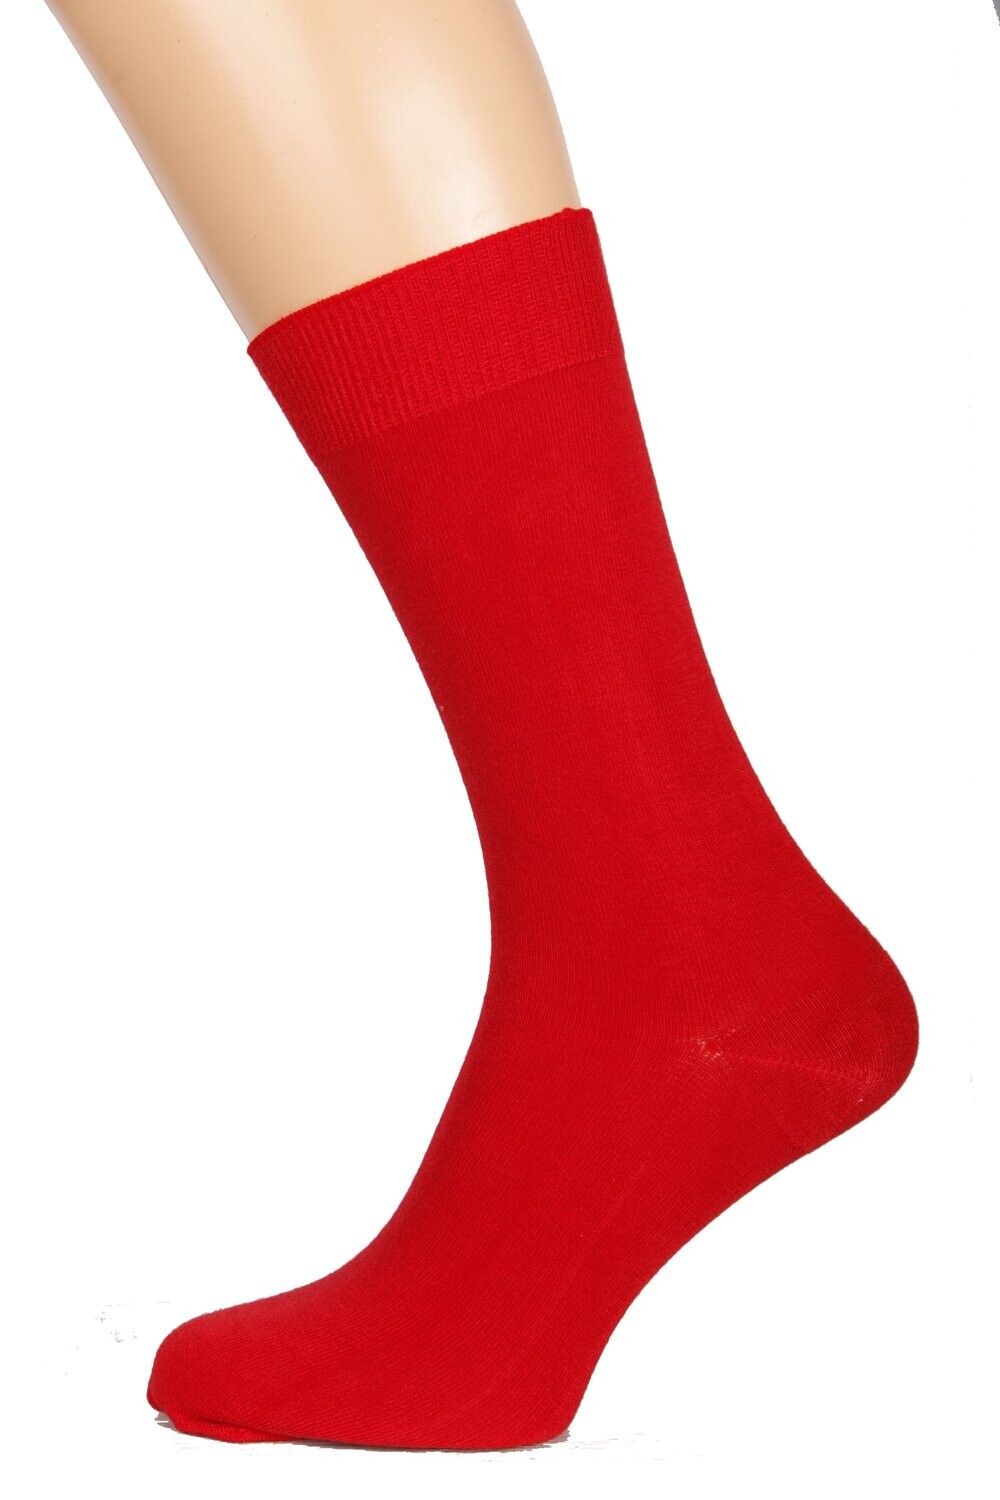 TAUNO men's red socks